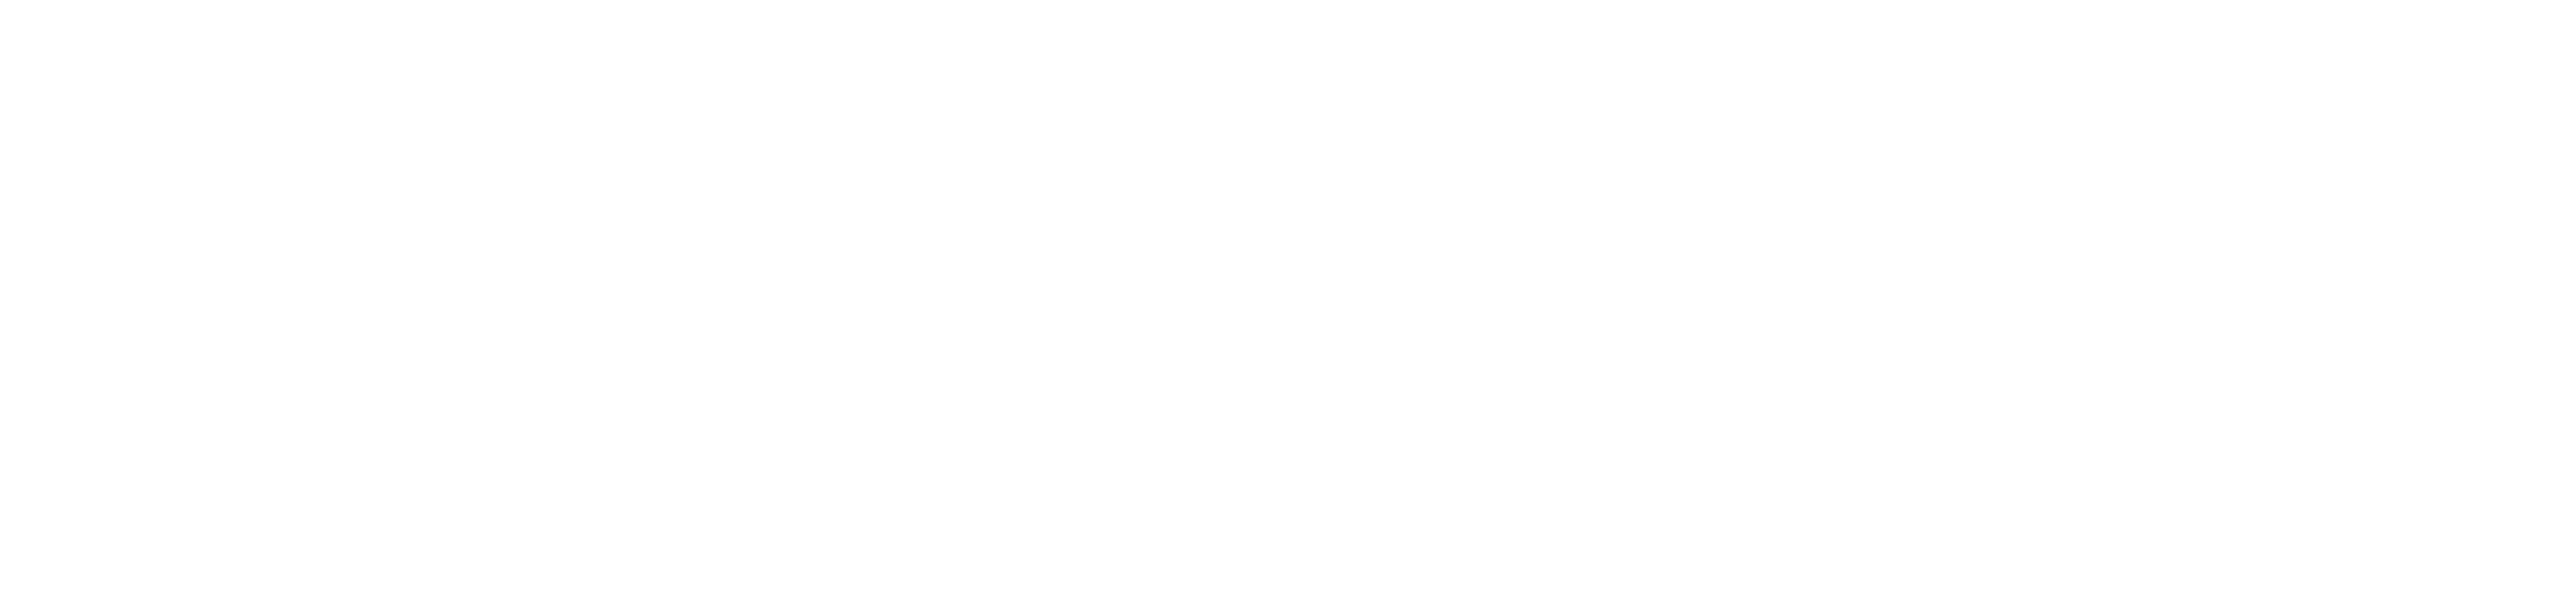 Goodwood Press & Media